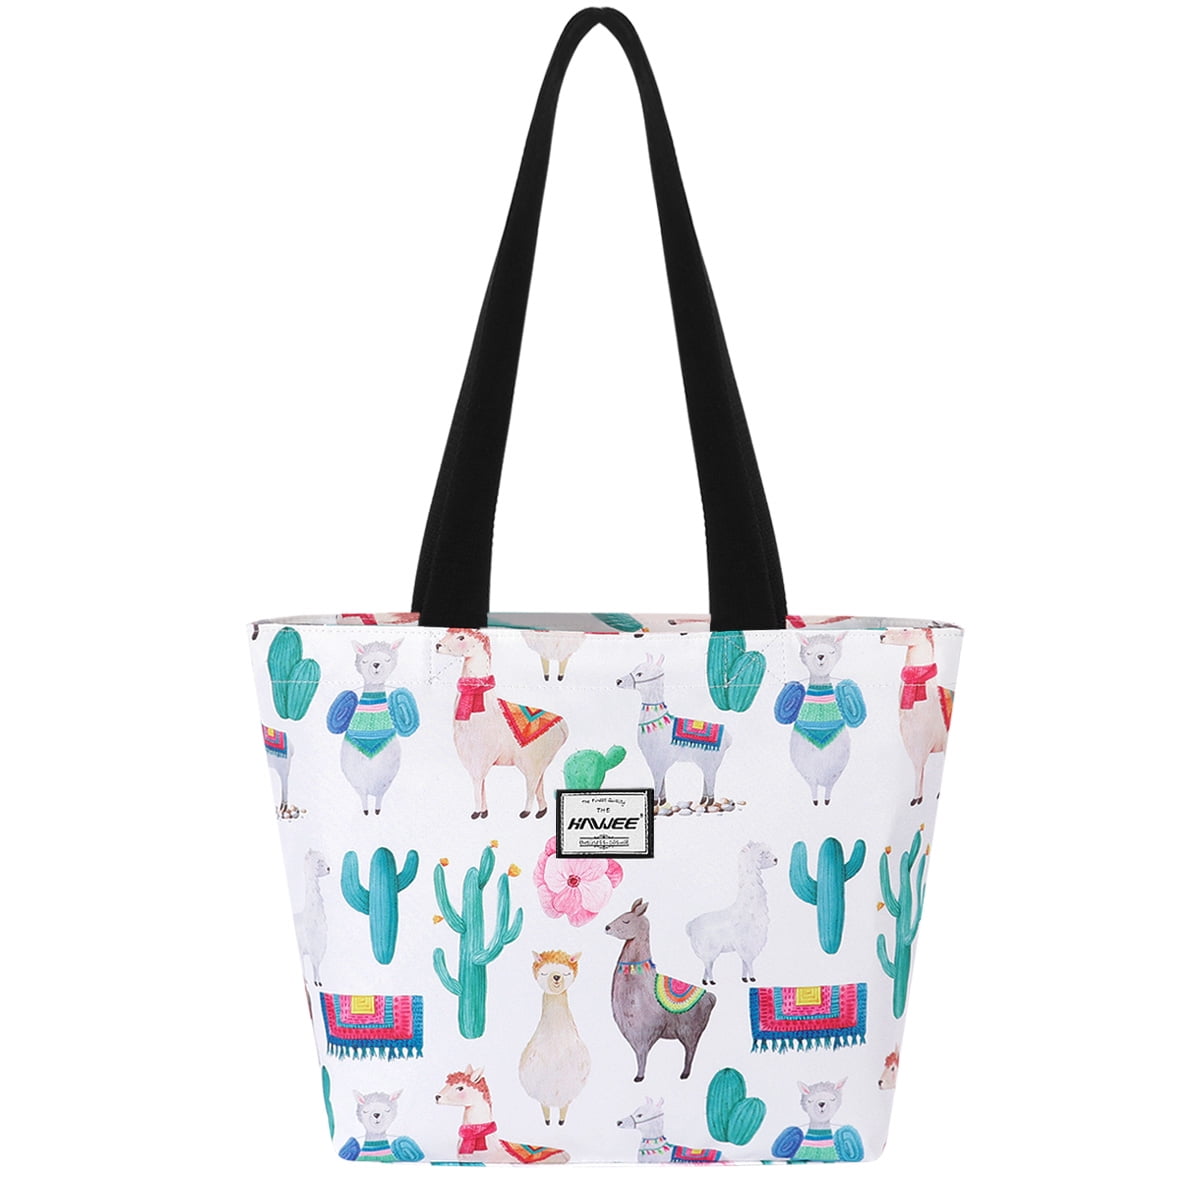 Women Girls Shoulder Bag Llama Alpaca Pattern Large Handbag Tote Beach Bags